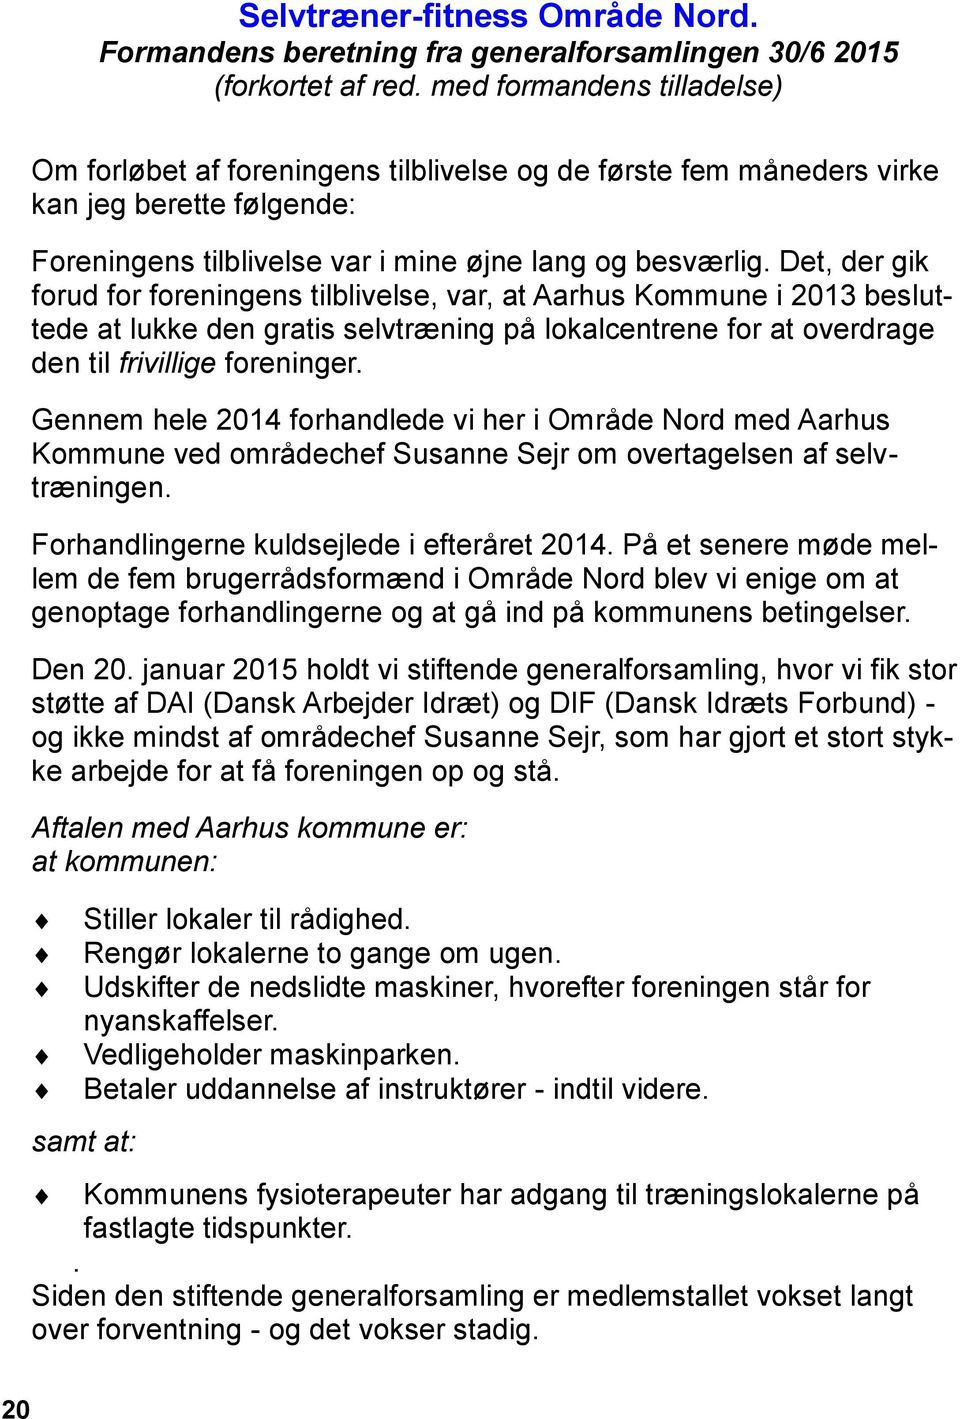 Det, der gik forud for foreningens tilblivelse, var, at Aarhus Kommune i 2013 besluttede at lukke den gratis selvtræning på lokalcentrene for at overdrage den til frivillige foreninger.